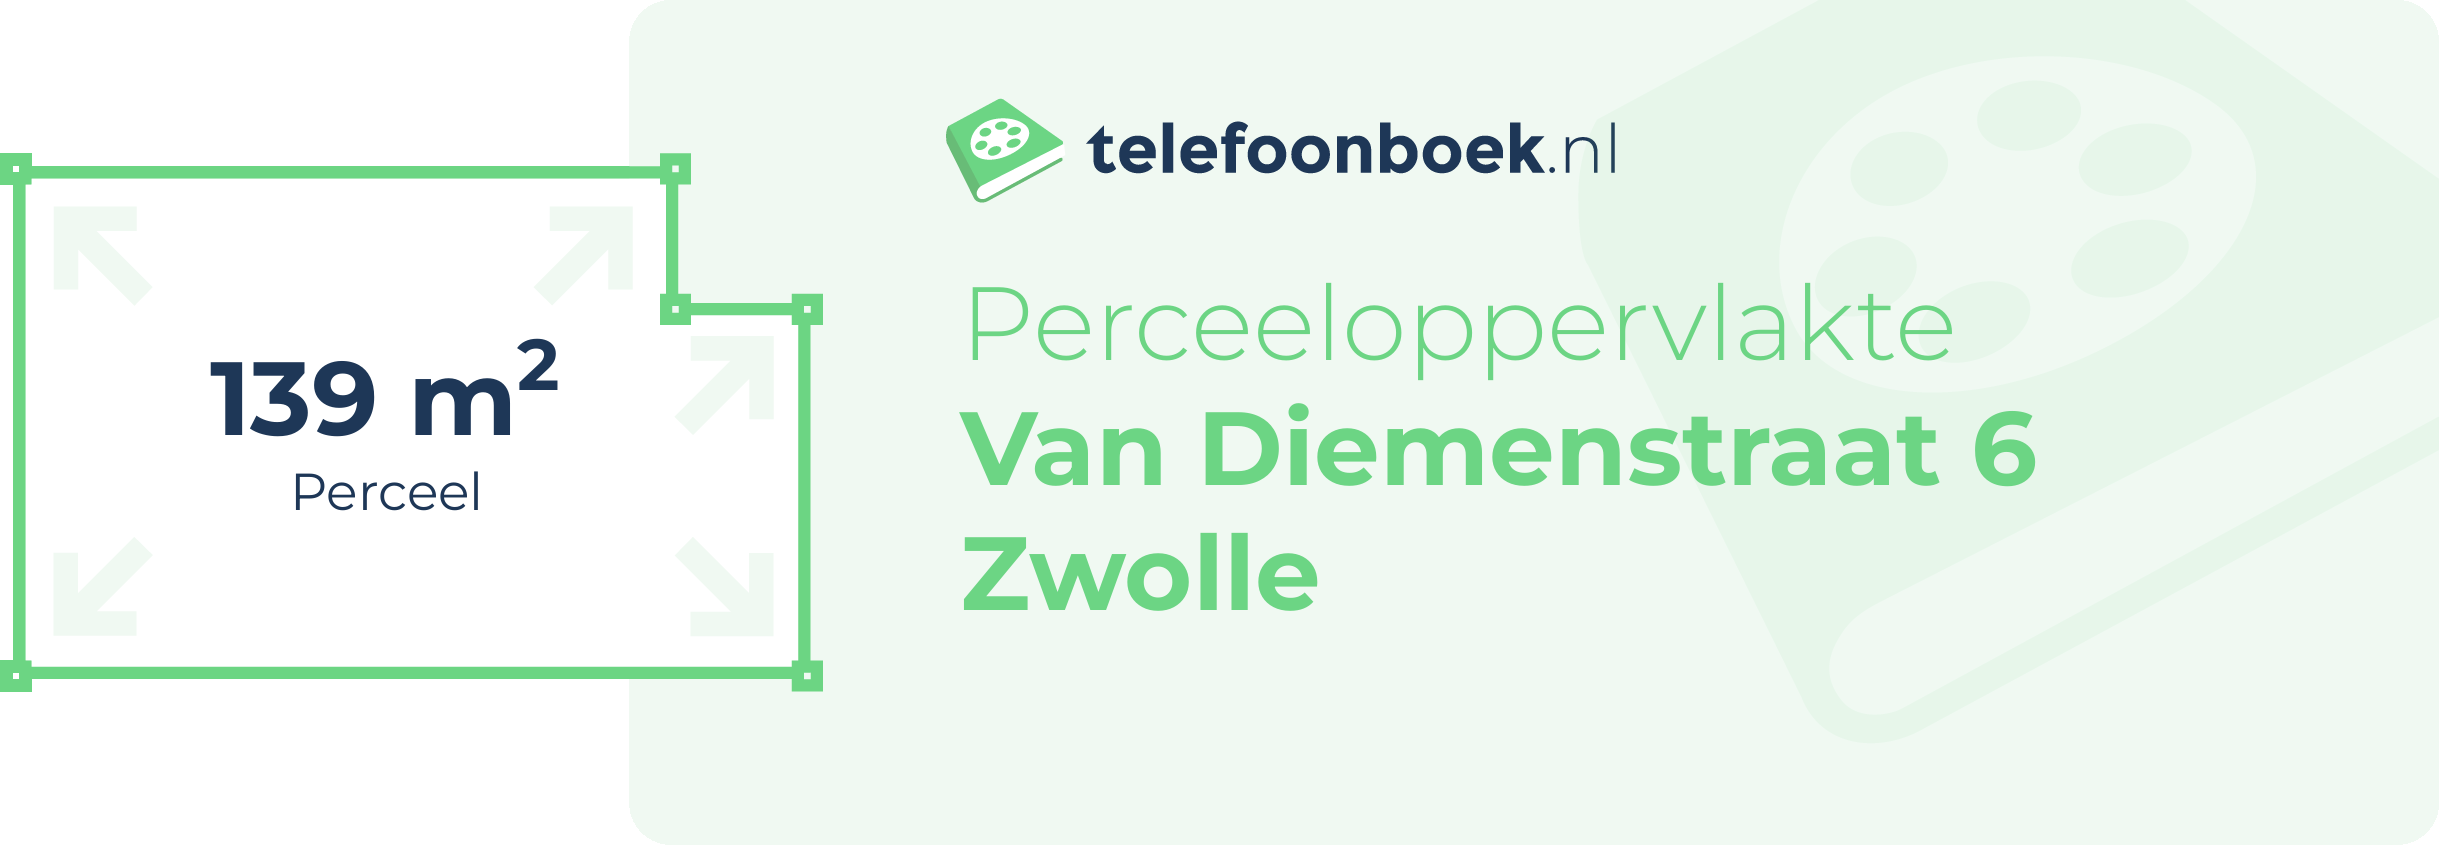 Perceeloppervlakte Van Diemenstraat 6 Zwolle